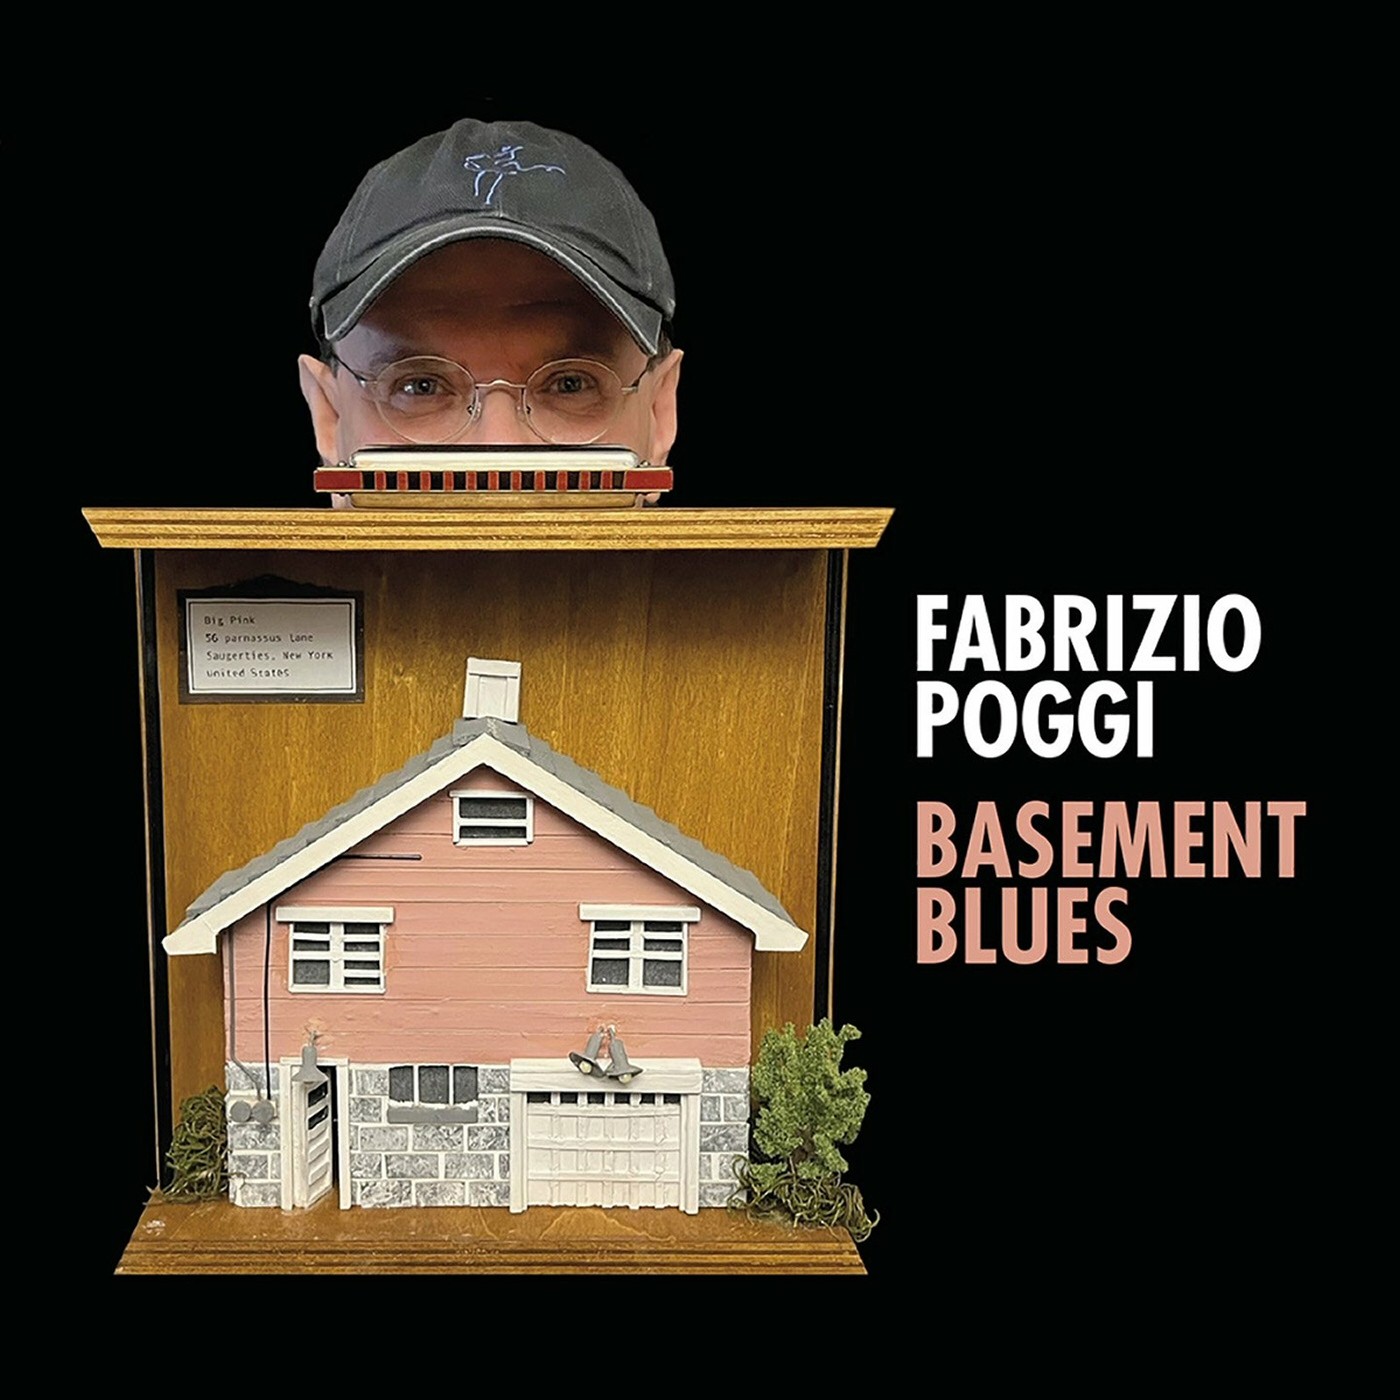 Fabrizio Poggi - Basement Blues